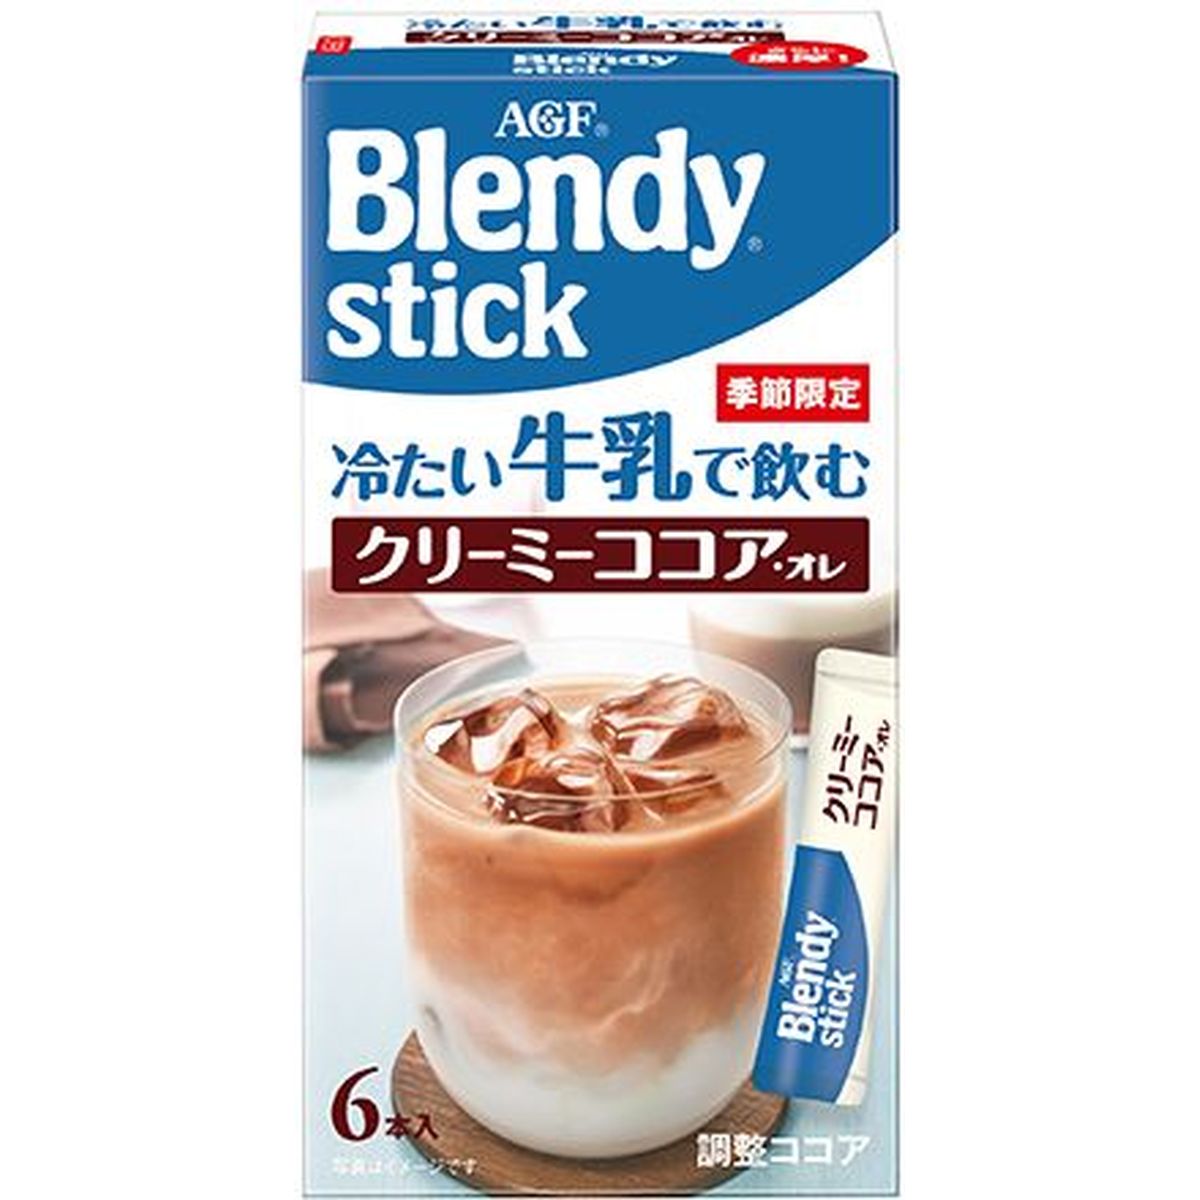 【6個入リ】AGF ブレンディスティック冷タイ牛乳クリーミーココア 6本